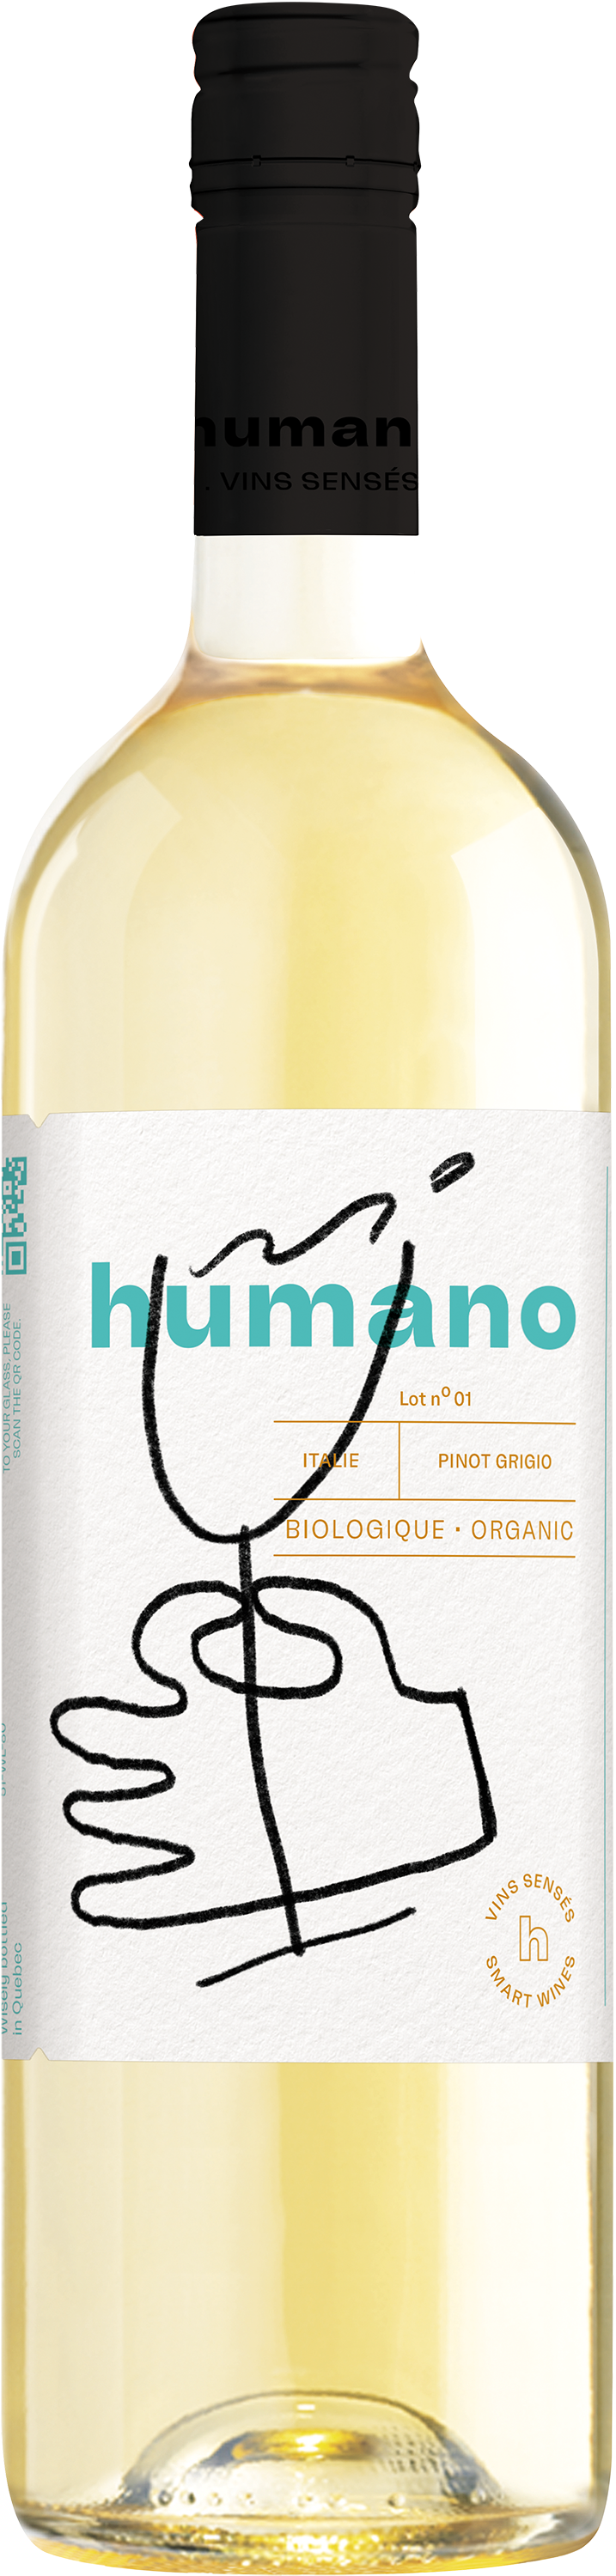 Humano Pinot Grigio Organic